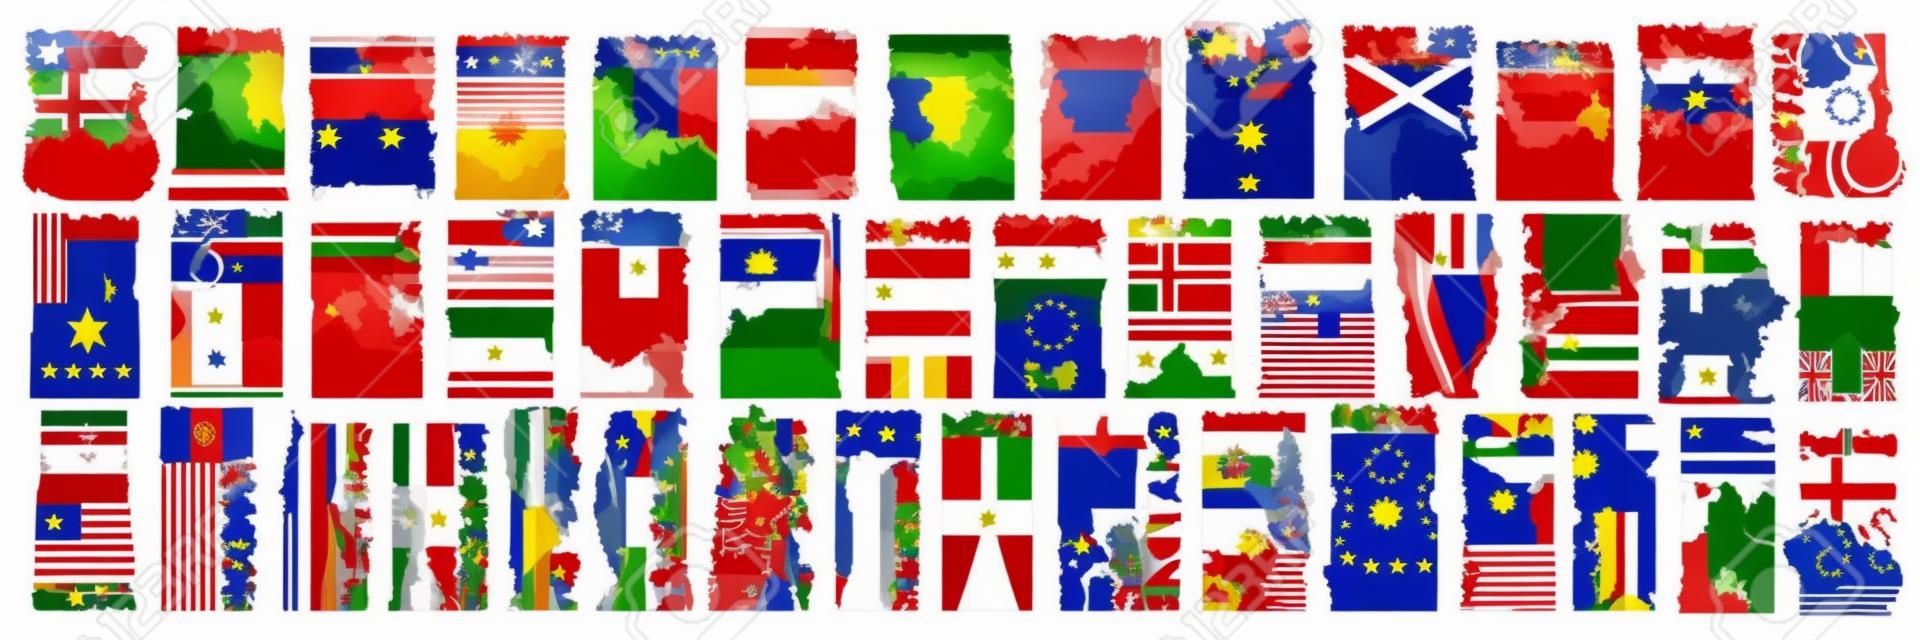 Ensemble d'images vectorielles de pays européens avec des drapeaux et des symboles, 43 étiquettes verticales isolées avec des drapeaux nationaux et une police de pinceau pour différents mots, des autocollants de conception d'art pour la fête de l'indépendance européenne.